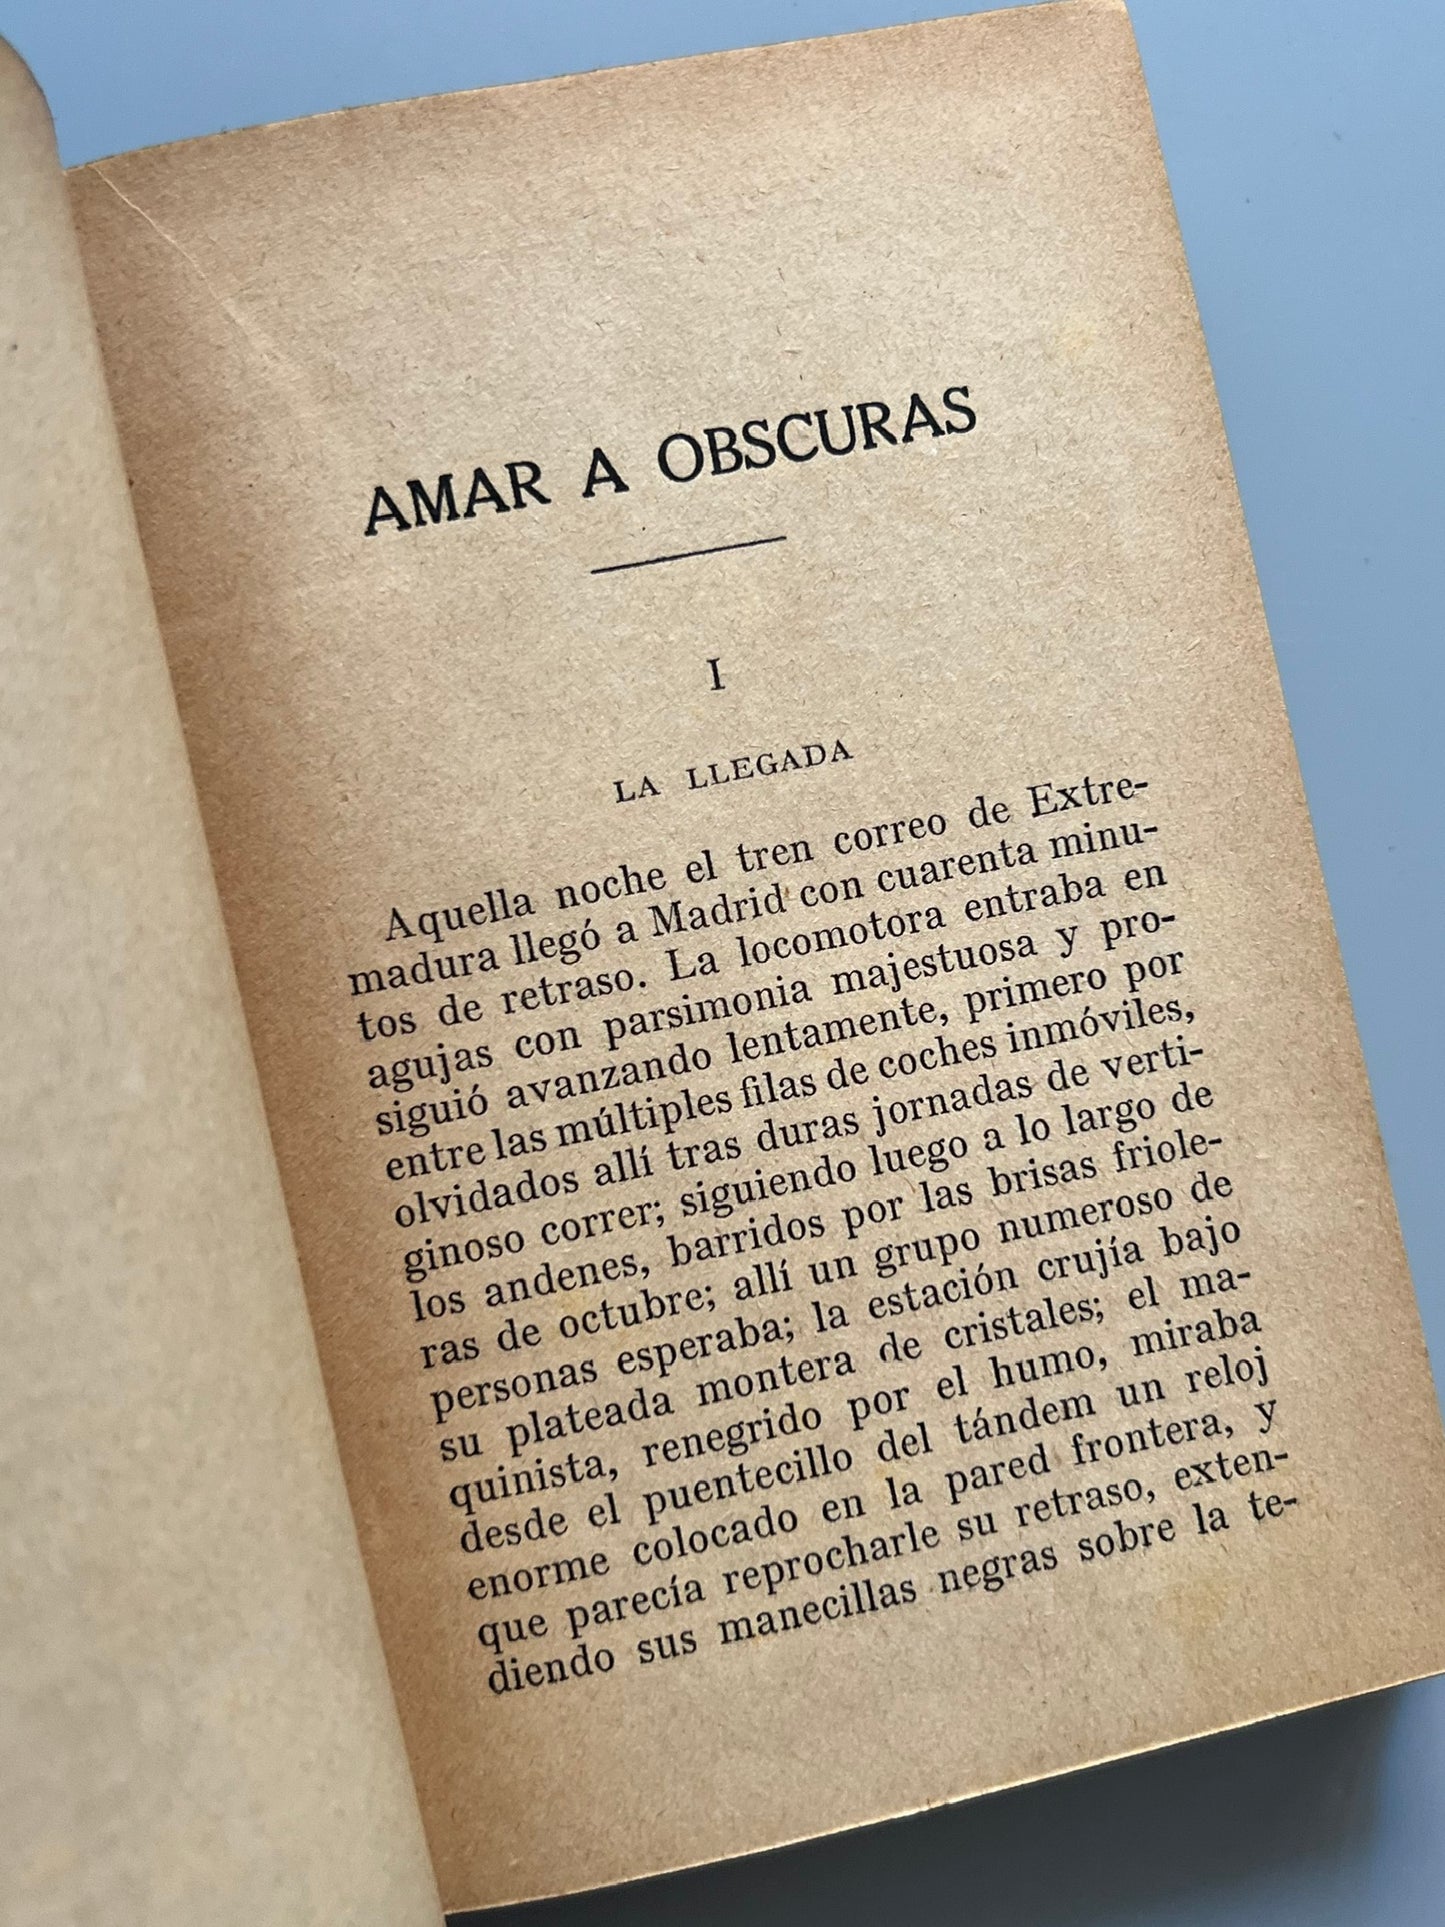 Amar a obscuras y Horas crueles, Eduardo Zamacois - Ramón Sopena editor, ca. 1920